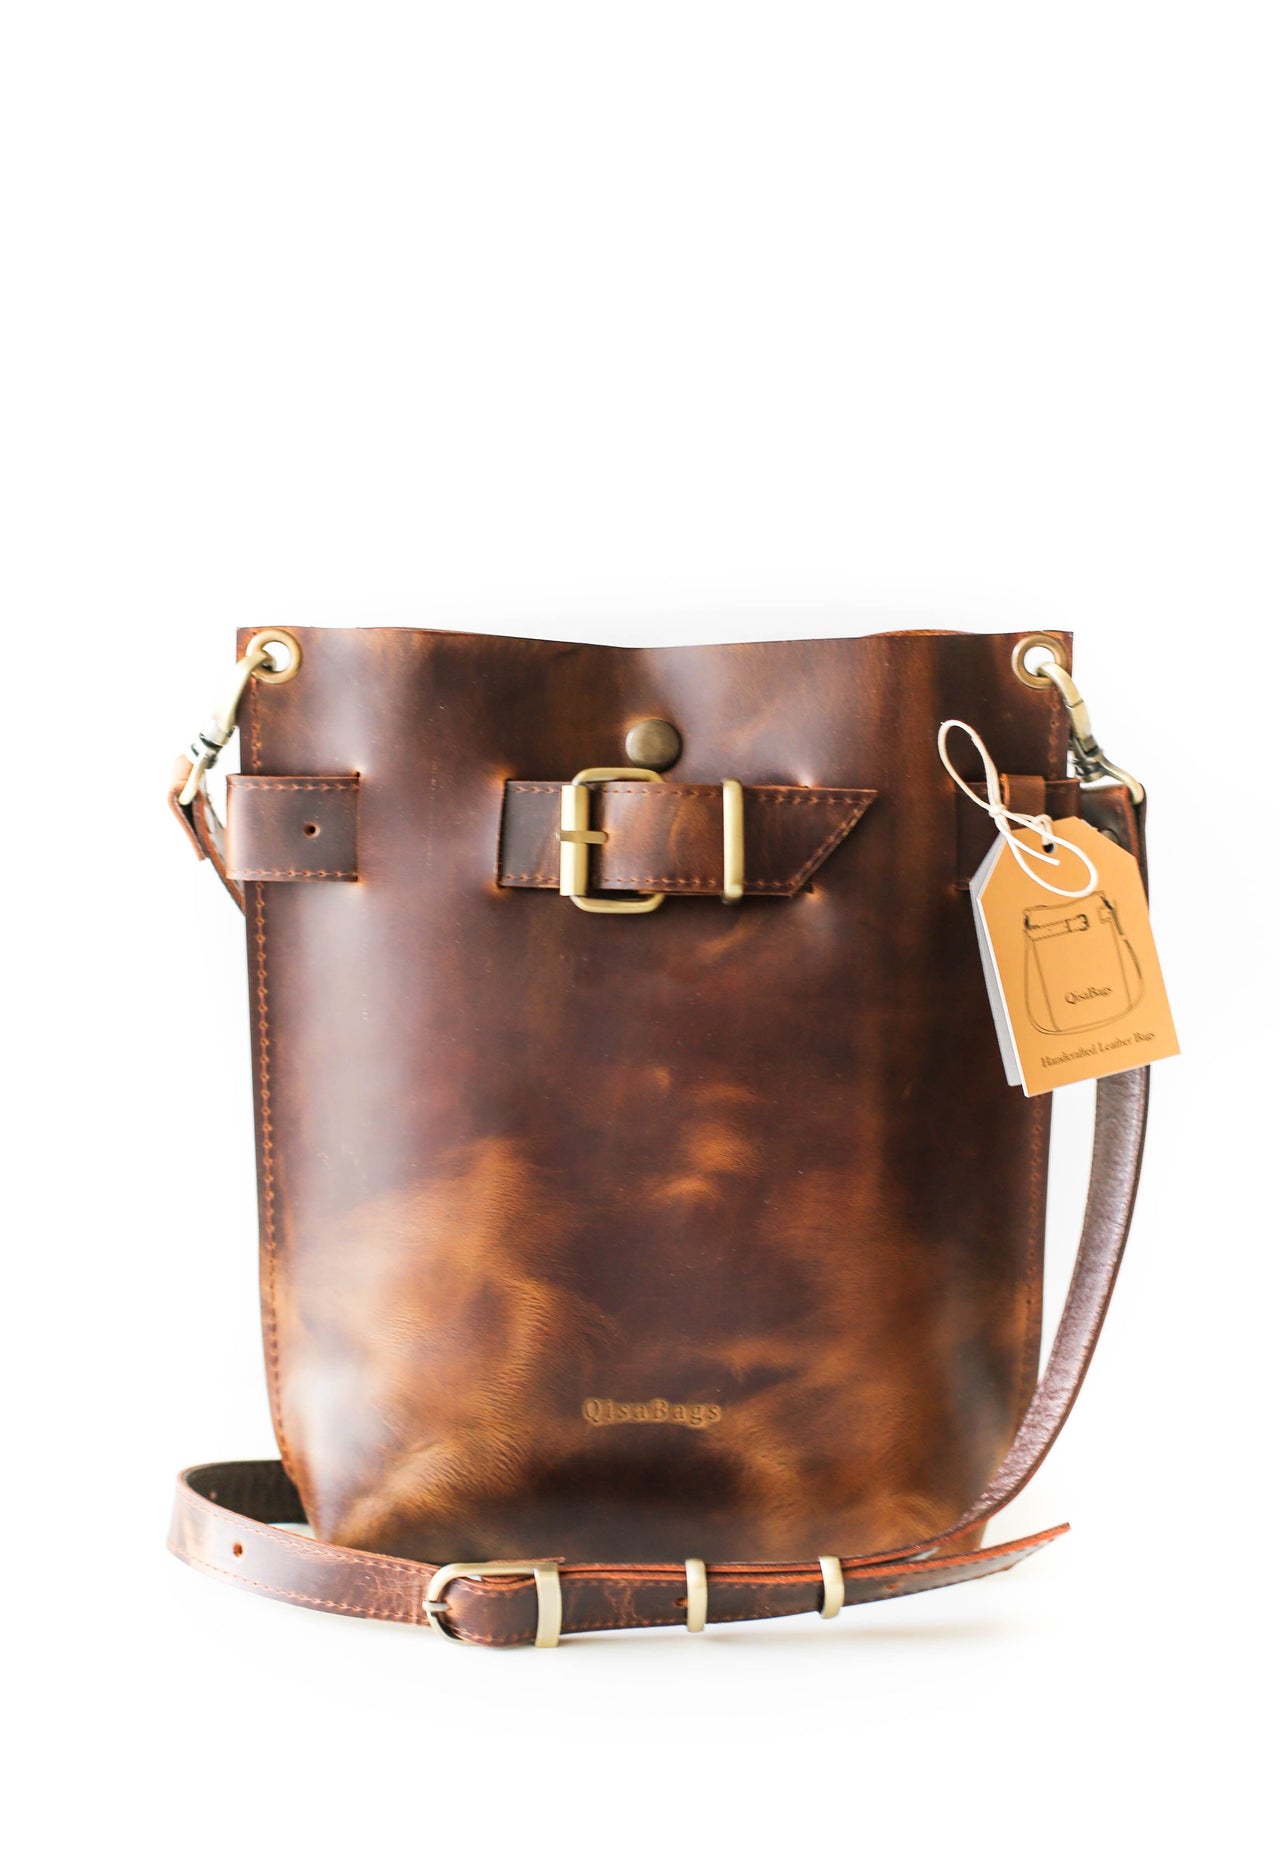 UKF New Lady's Leather Bag Fashionable Large Capacity Bucket Bag